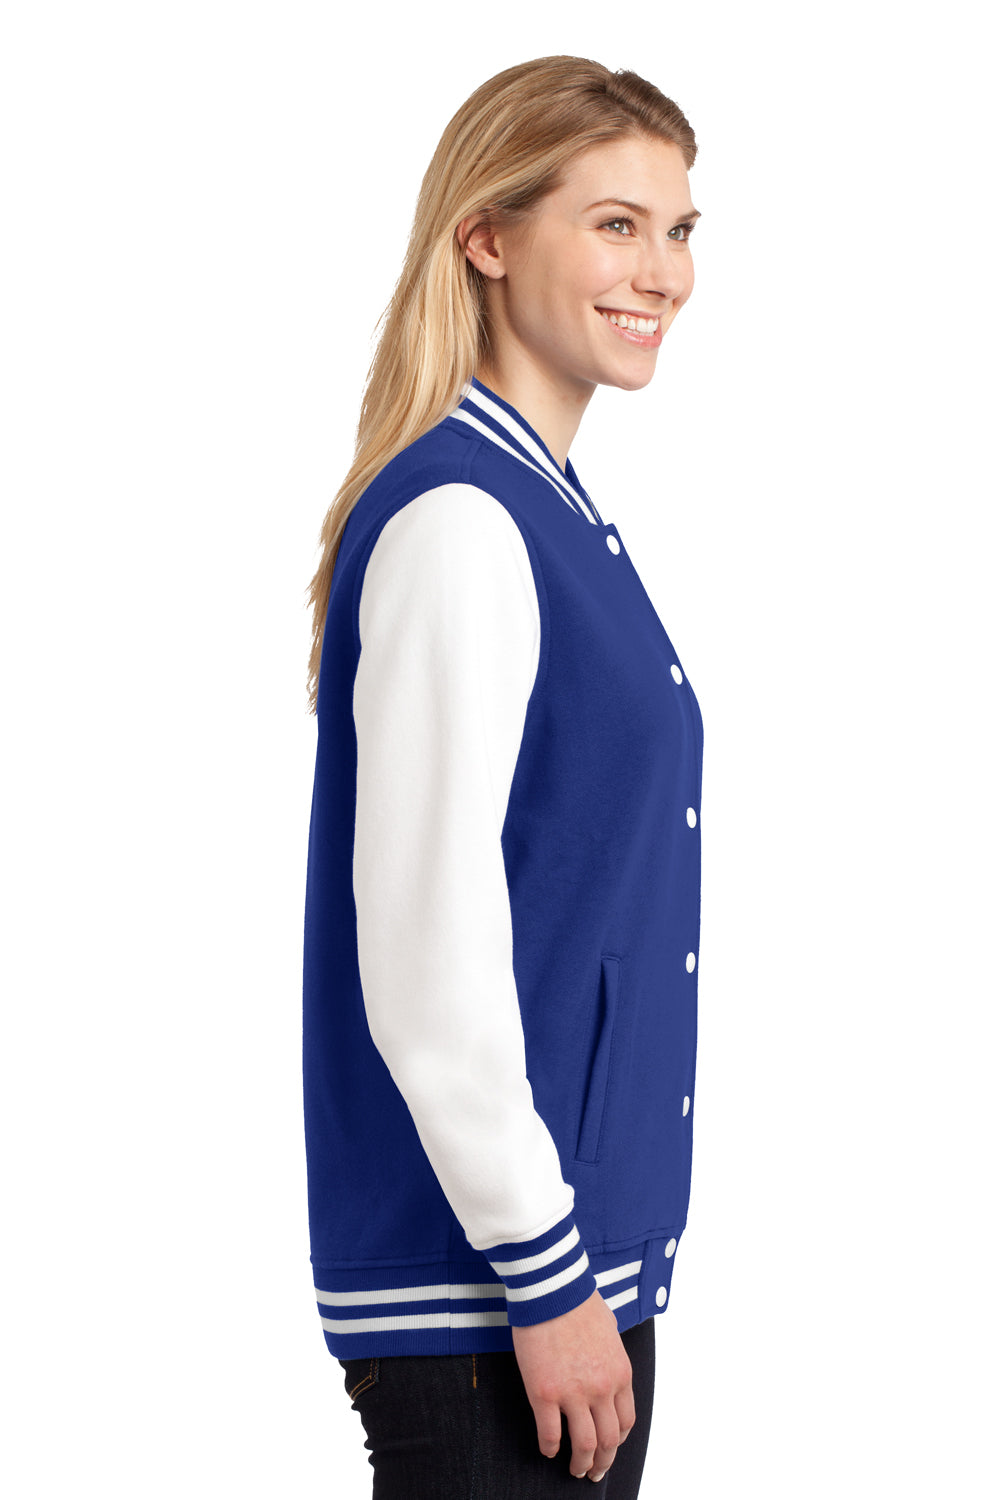 Sport-Tek LST270 Womens Snap Down Fleece Letterman Jacket Royal Blue Side